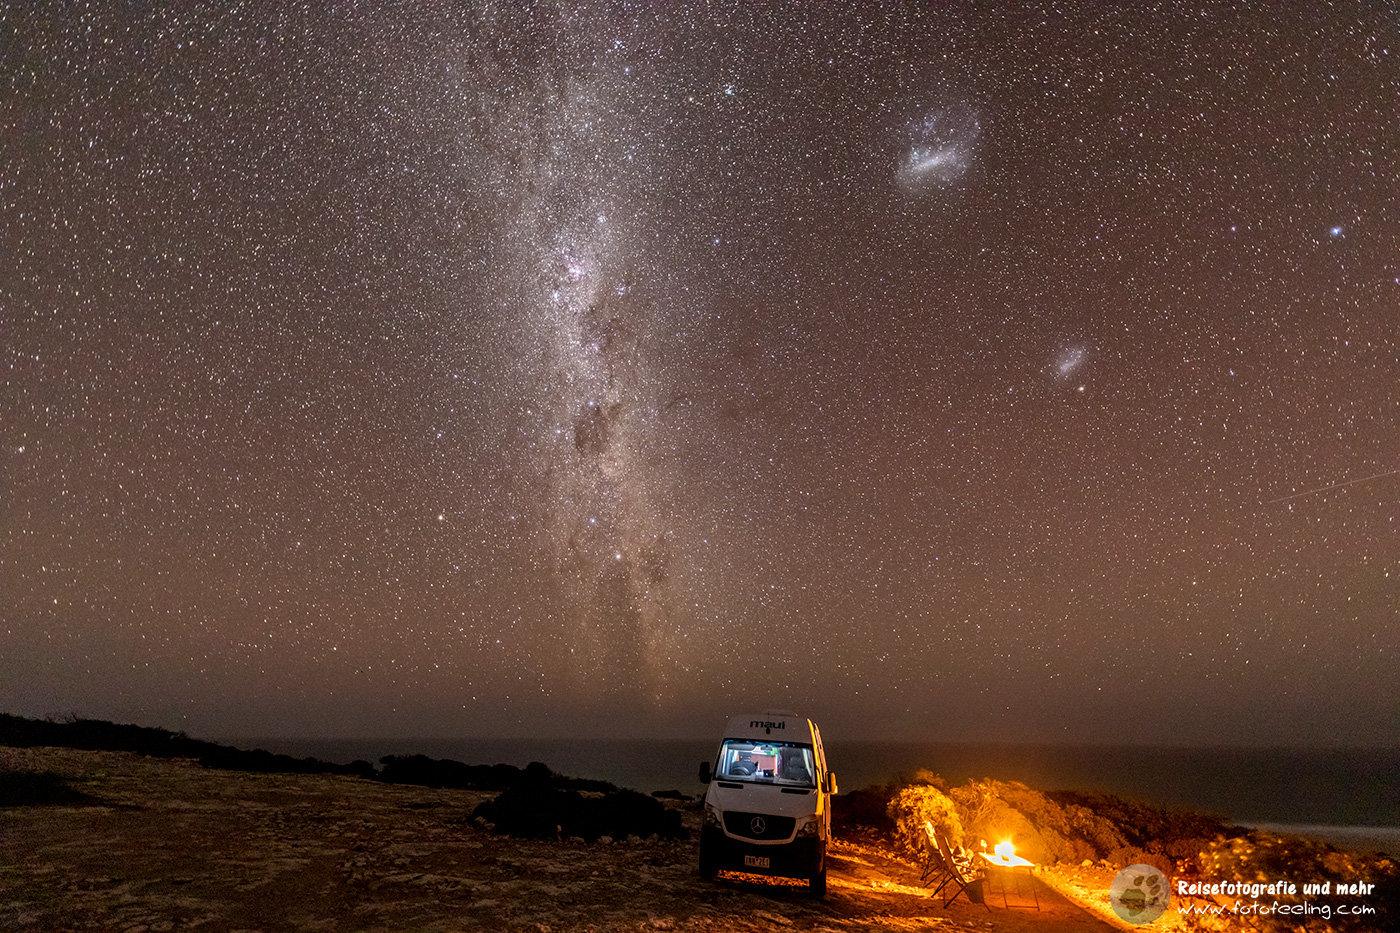 Campen unter der Milchstraße, Nullarbor National Park, South Australia, Australien